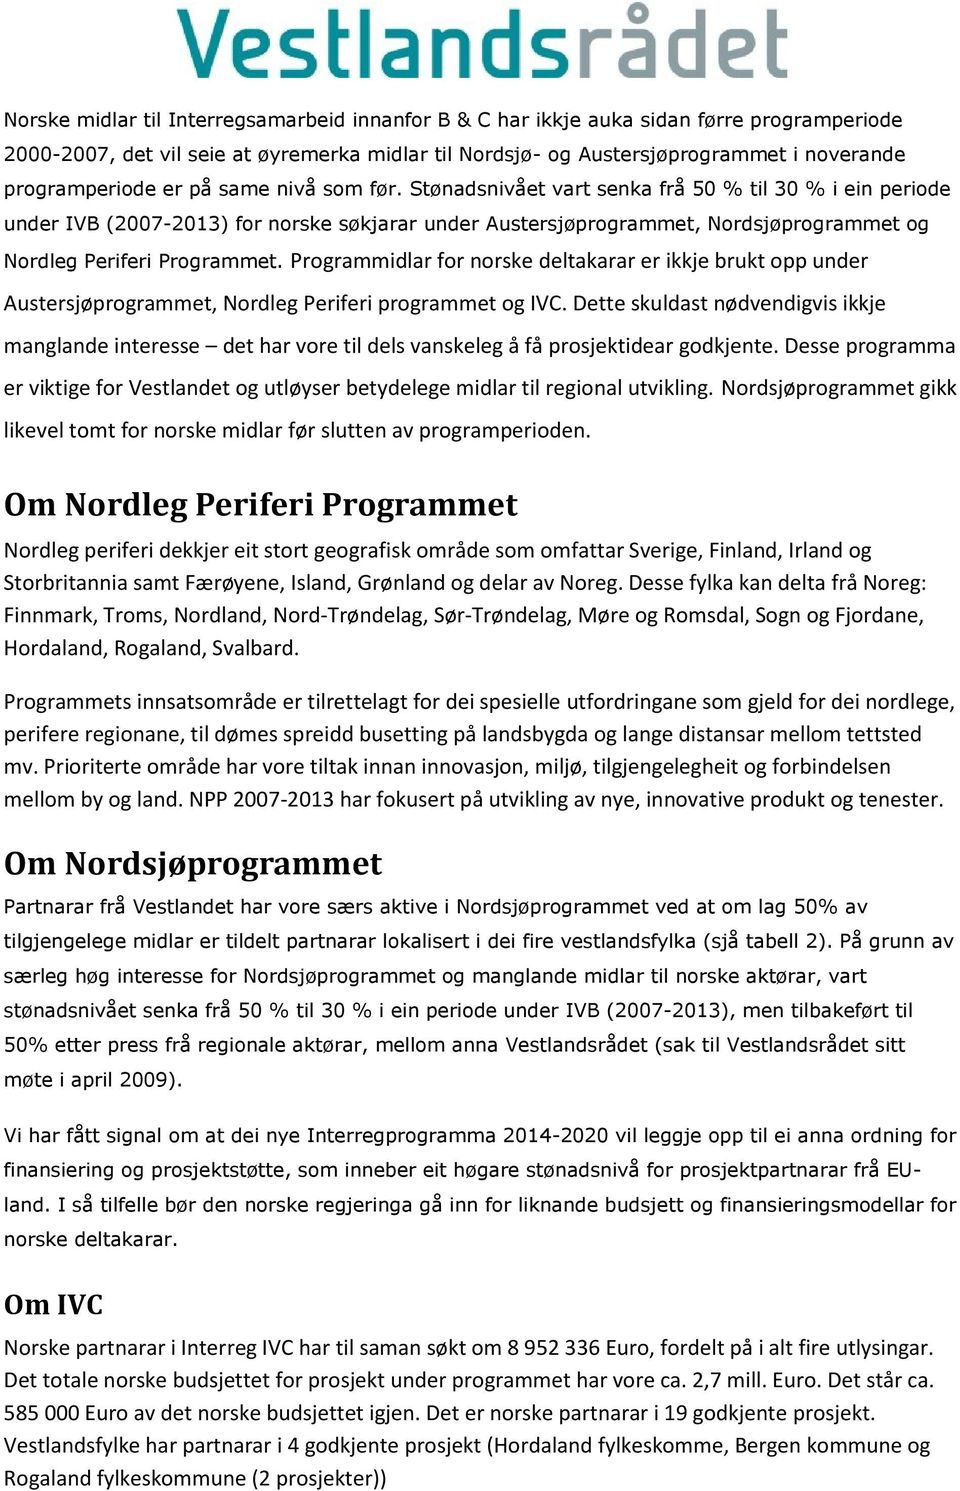 Programmidlar for norske deltakarar er ikkje brukt opp under Austersjøprogrammet, Nordleg Periferi programmet og IVC.